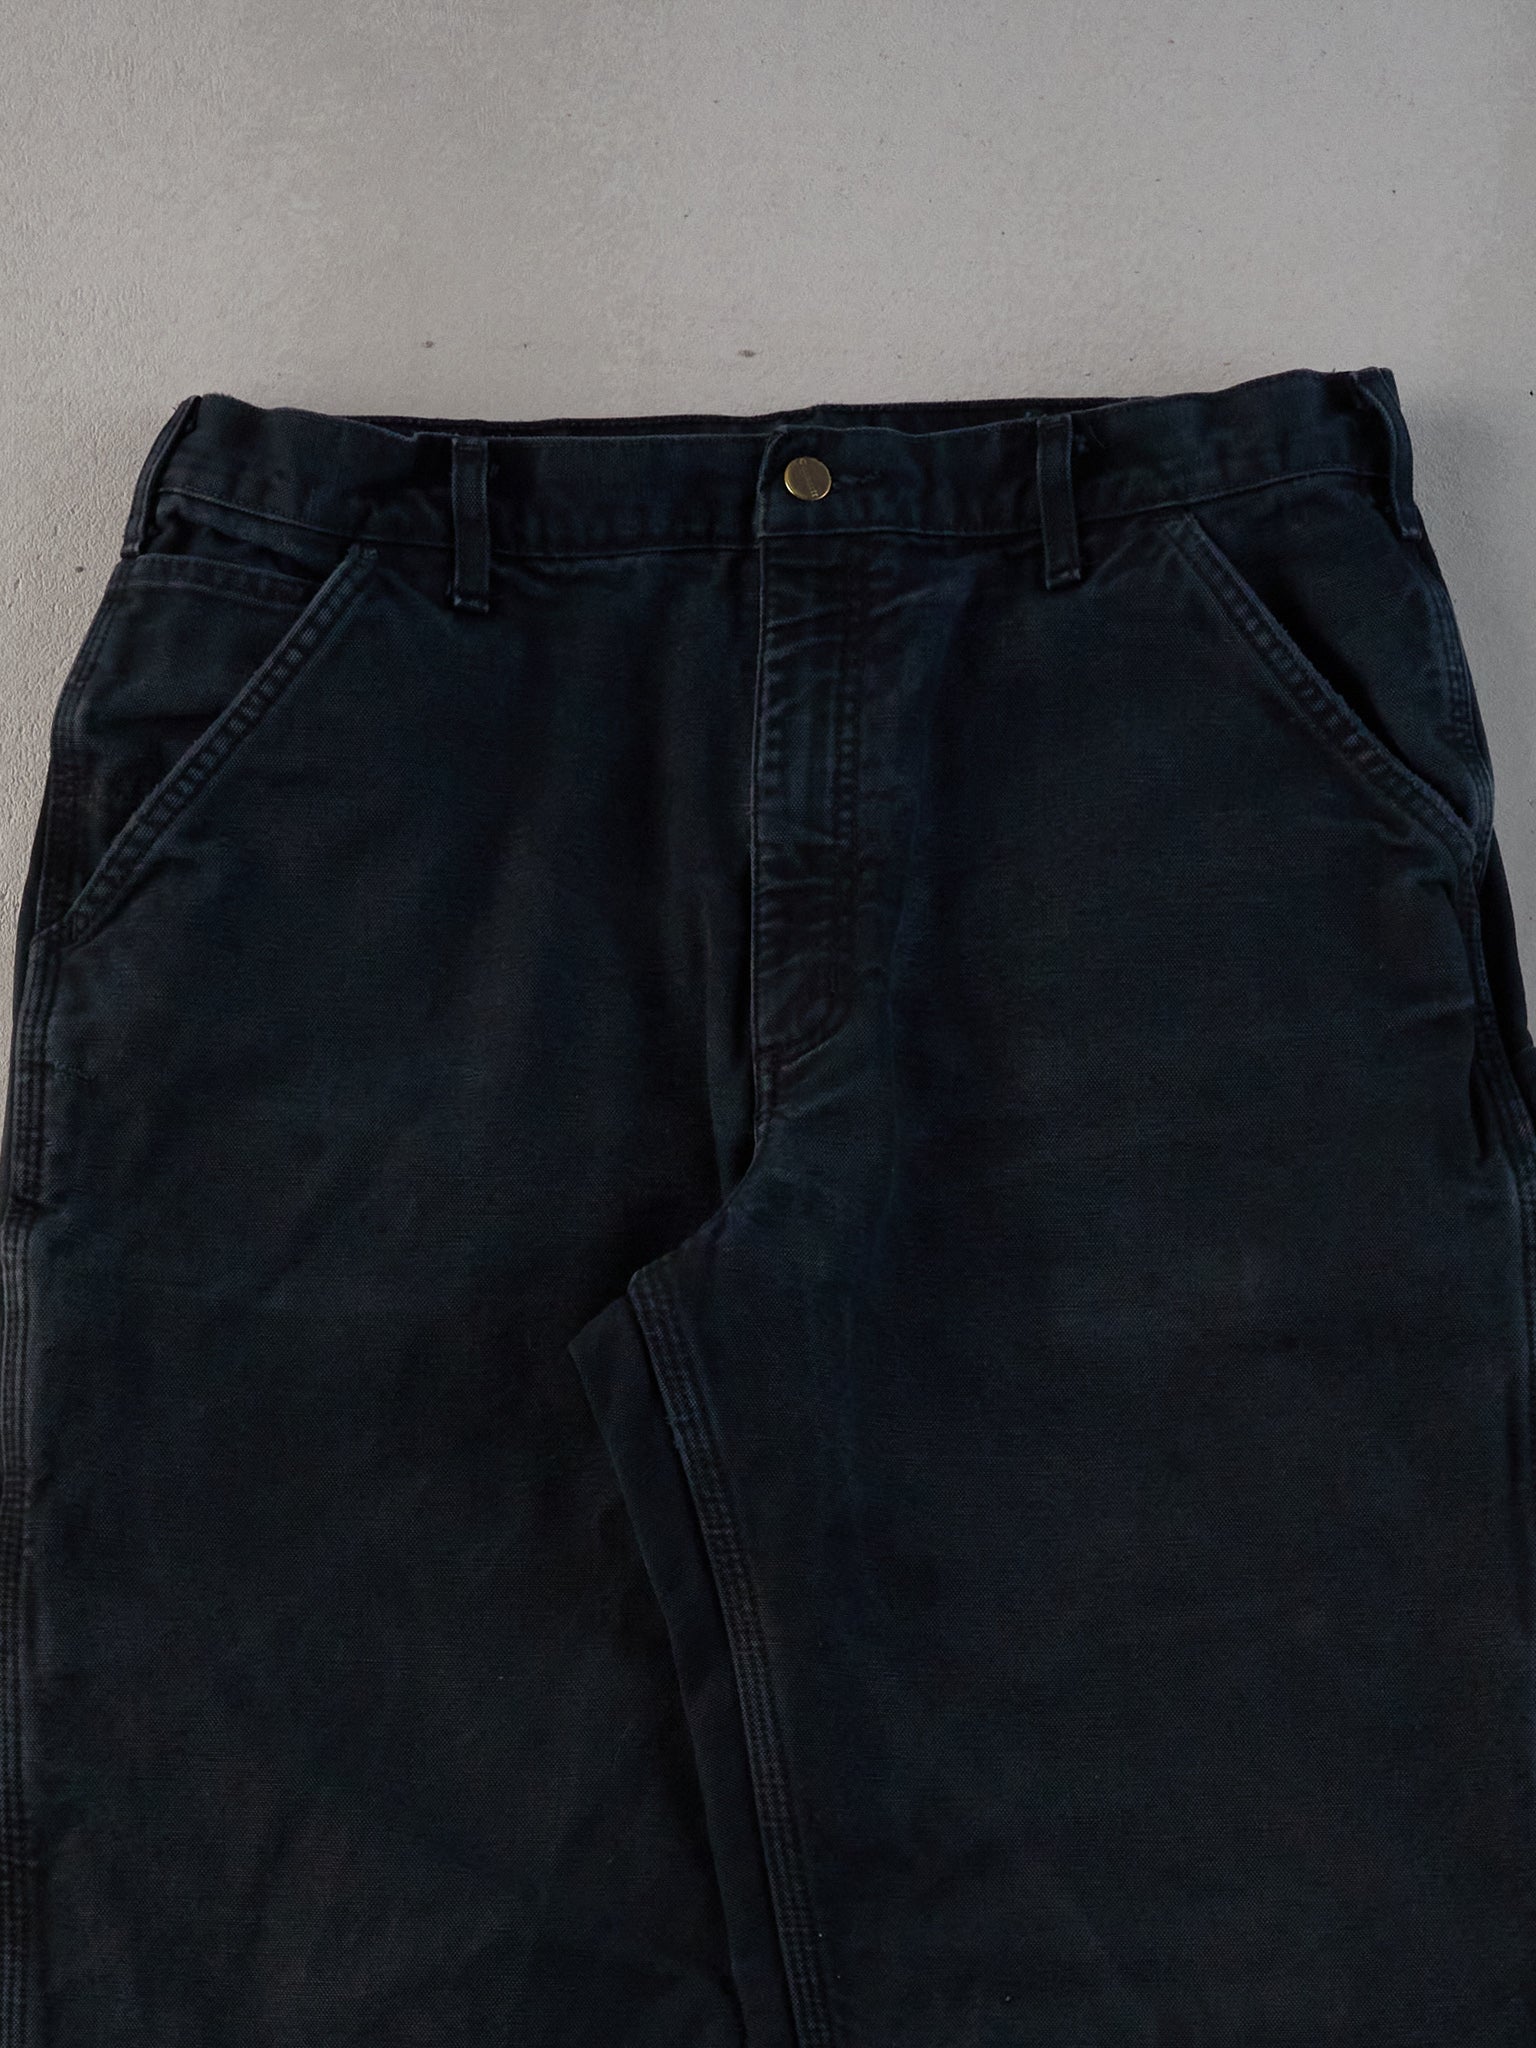 Vintage 90s Black Carhartt Blanket Lined Carpenter Pants (35x35)